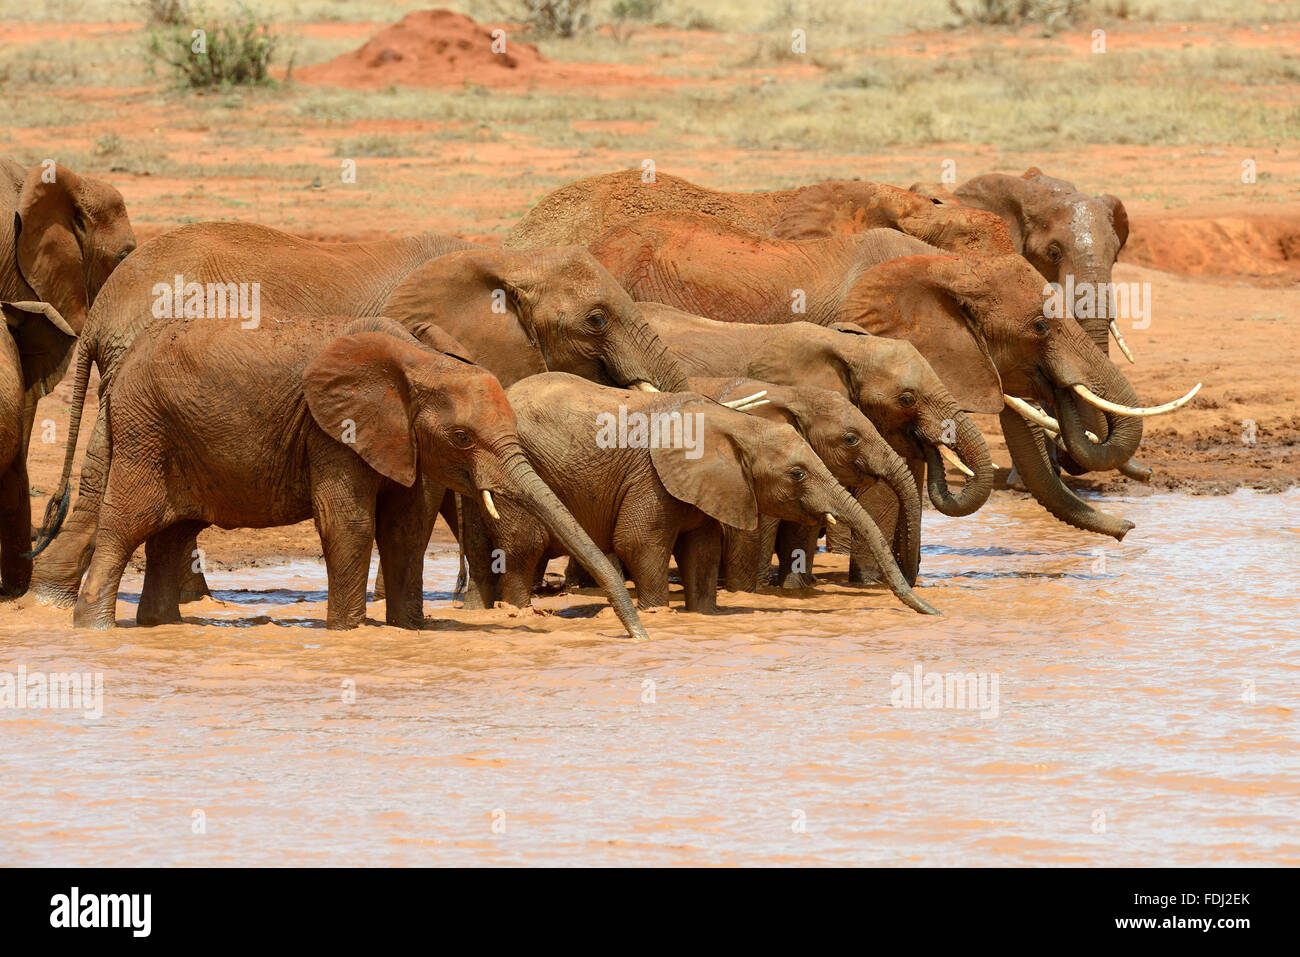 Elephant in lake. National park of Kenya, Africa Stock Photo